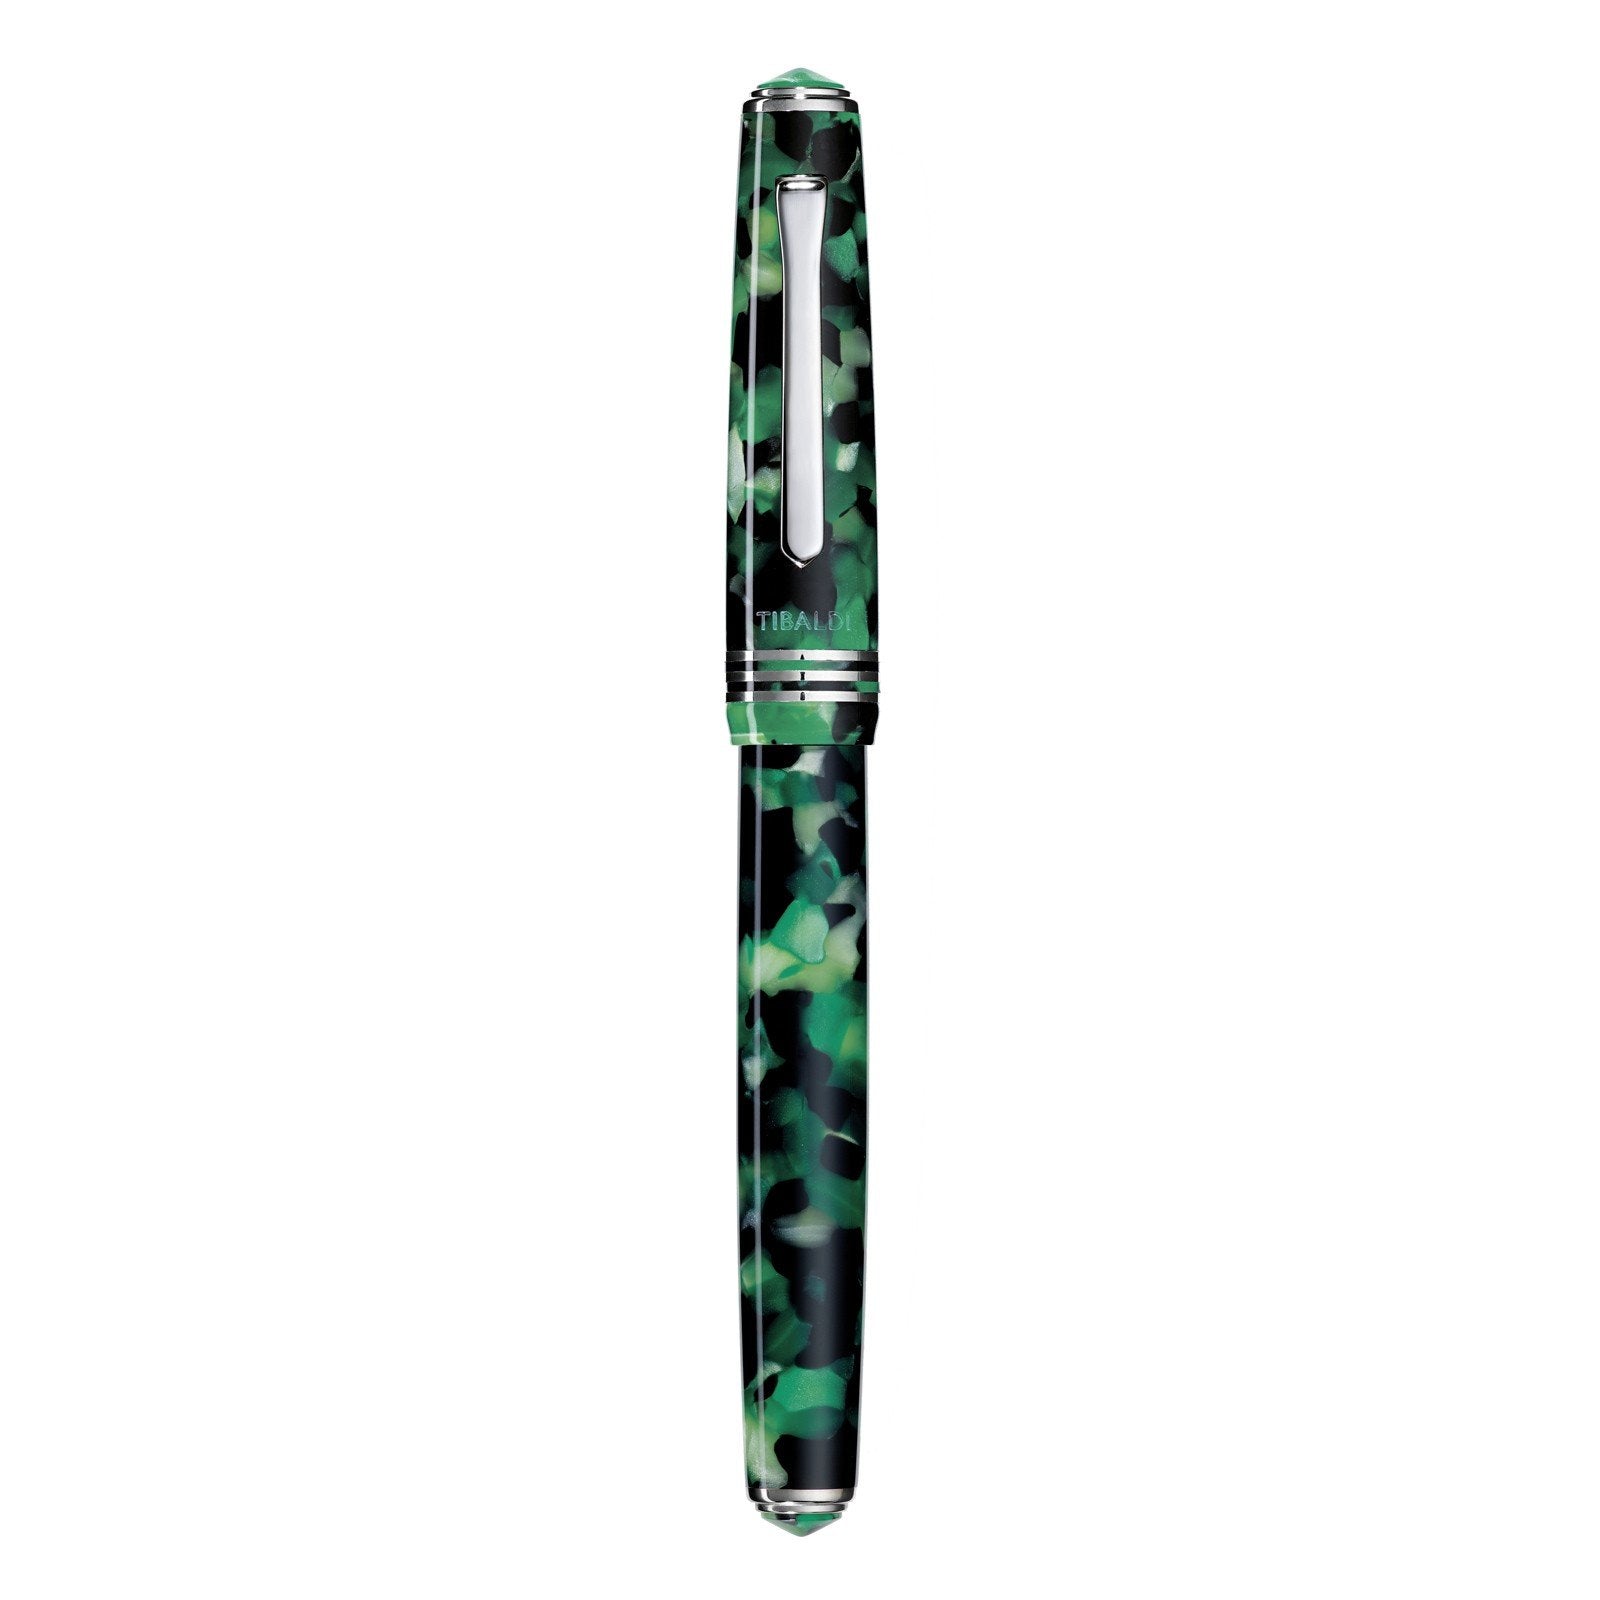 Tibaldi stilografica N60 in resina verde smeraldo punta larga N60-489_FP-B - Gioielleria Capodagli